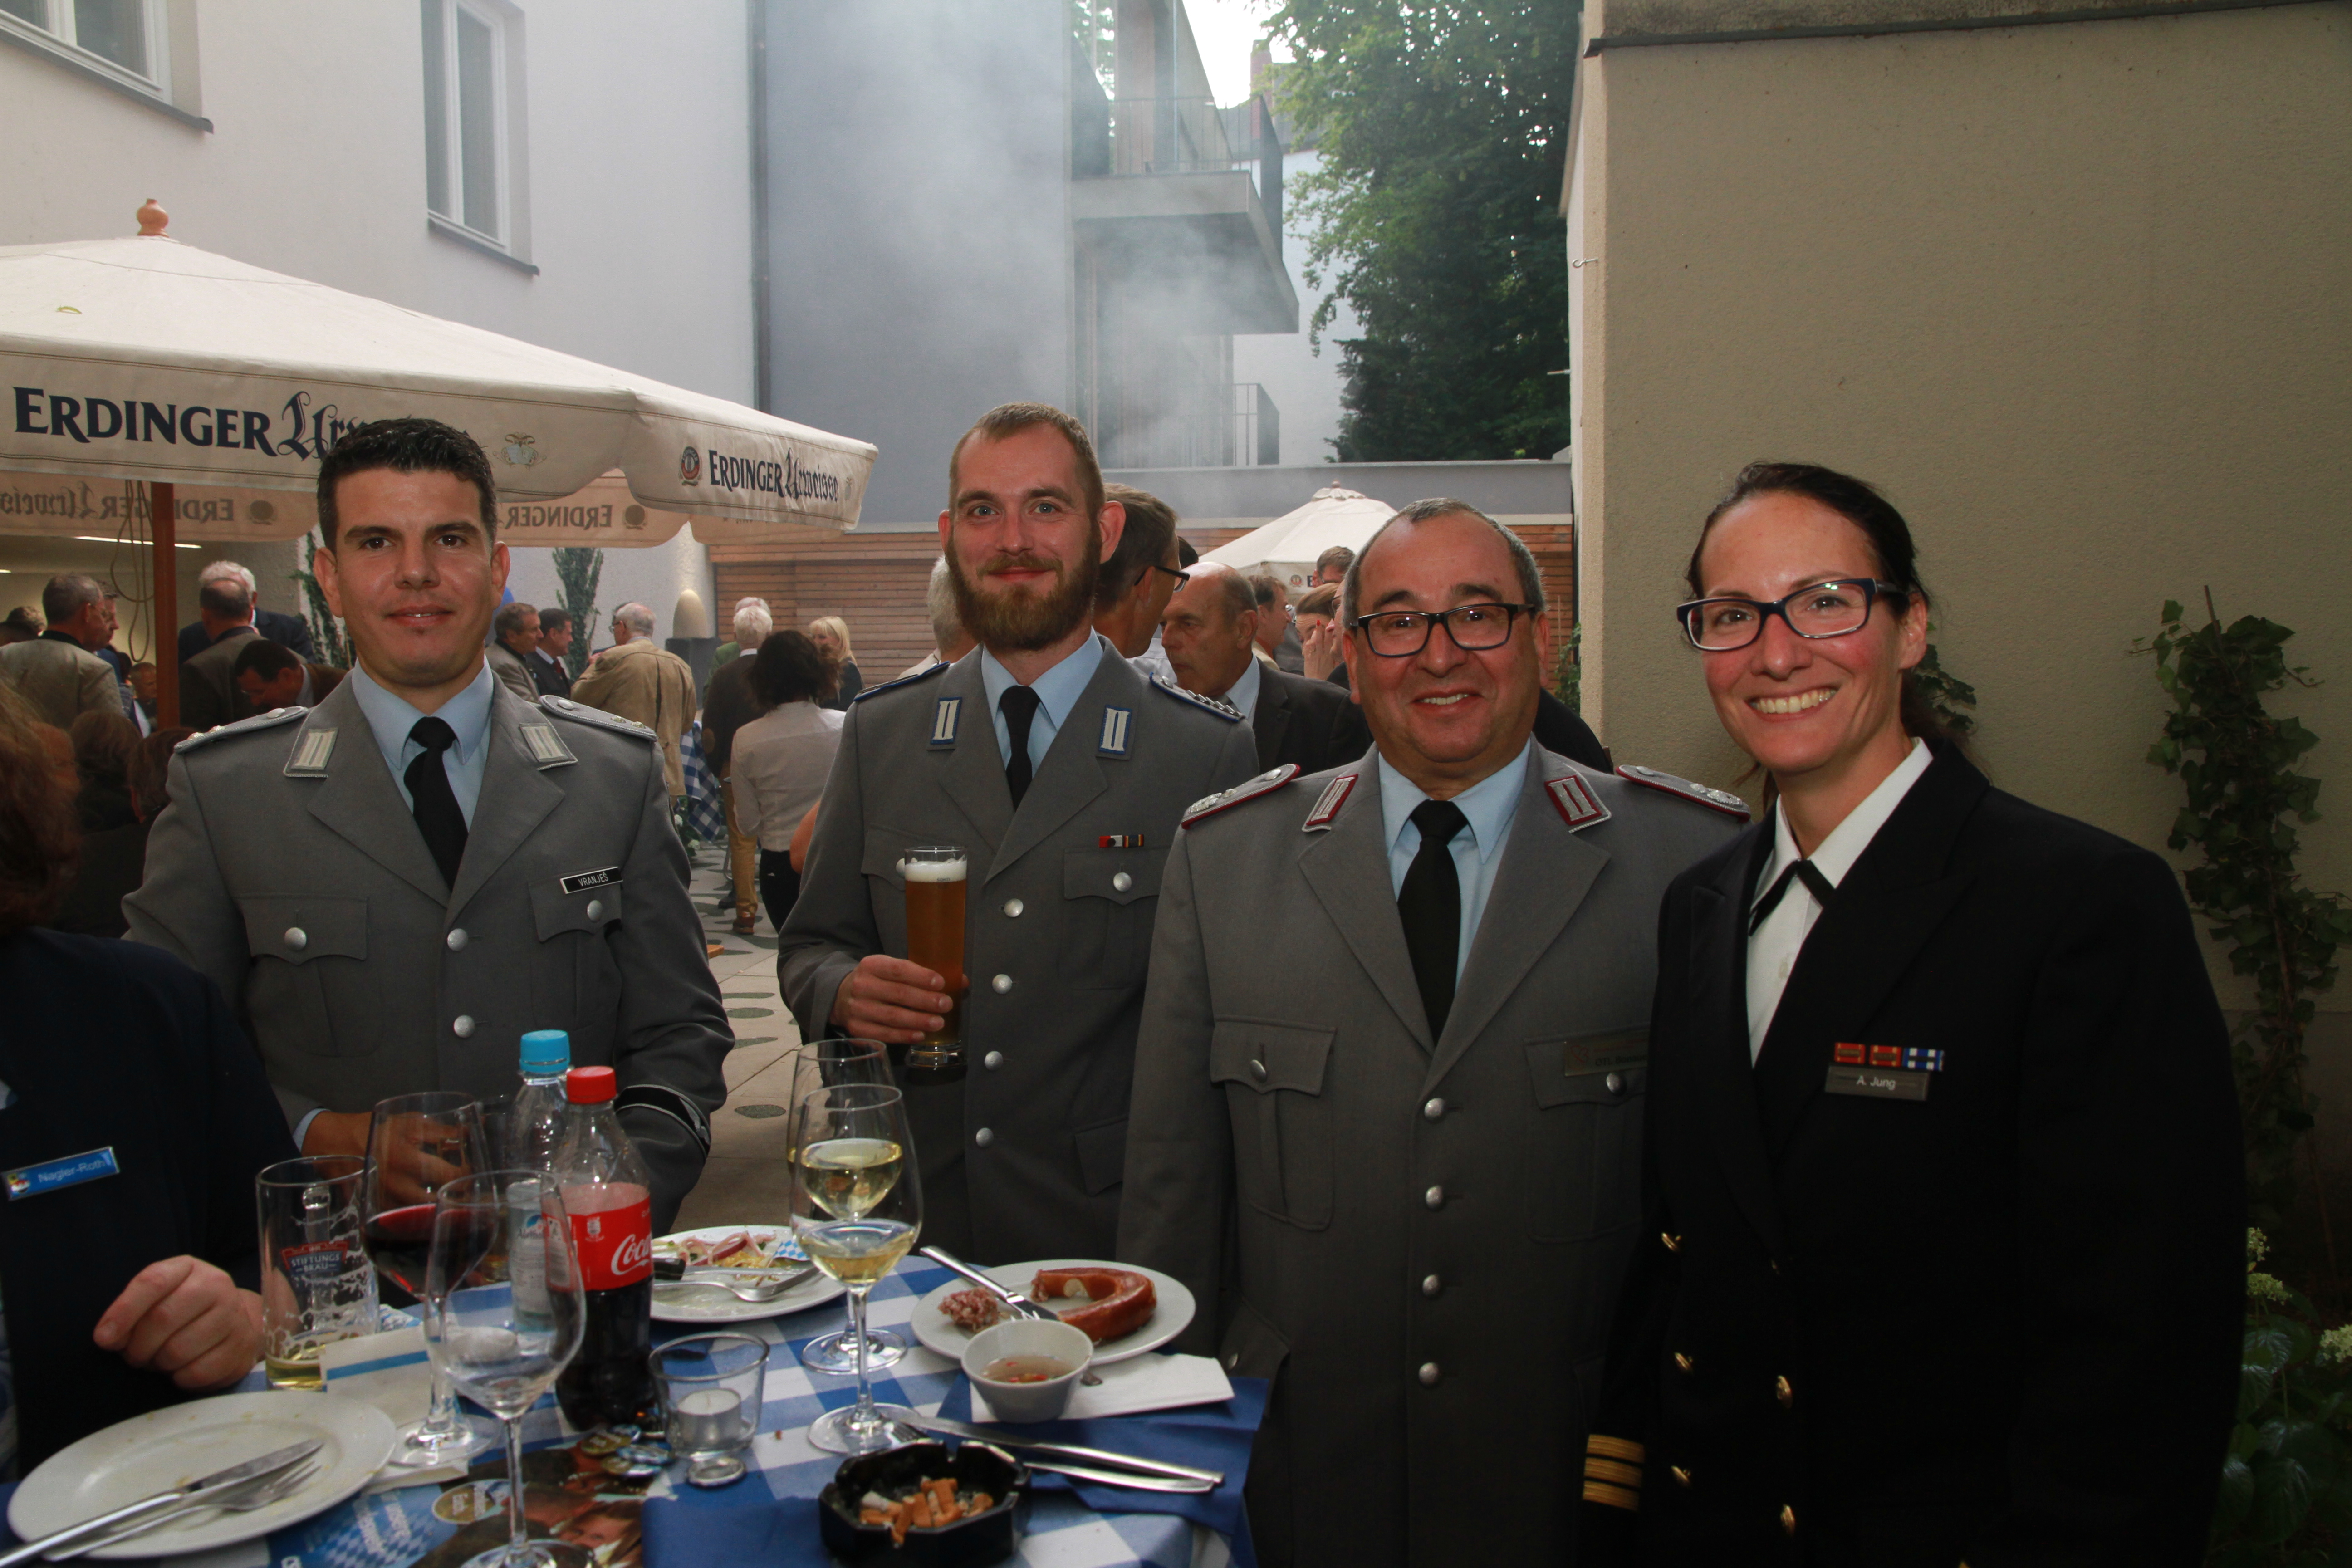 Gerne gesehene Gäste: Aktive Vertreter der Streitkräfte aus verschiedenen Truppengattungen und mit unterschiedlichen Dienstgraden. (Foto: CSU-Fraktion)